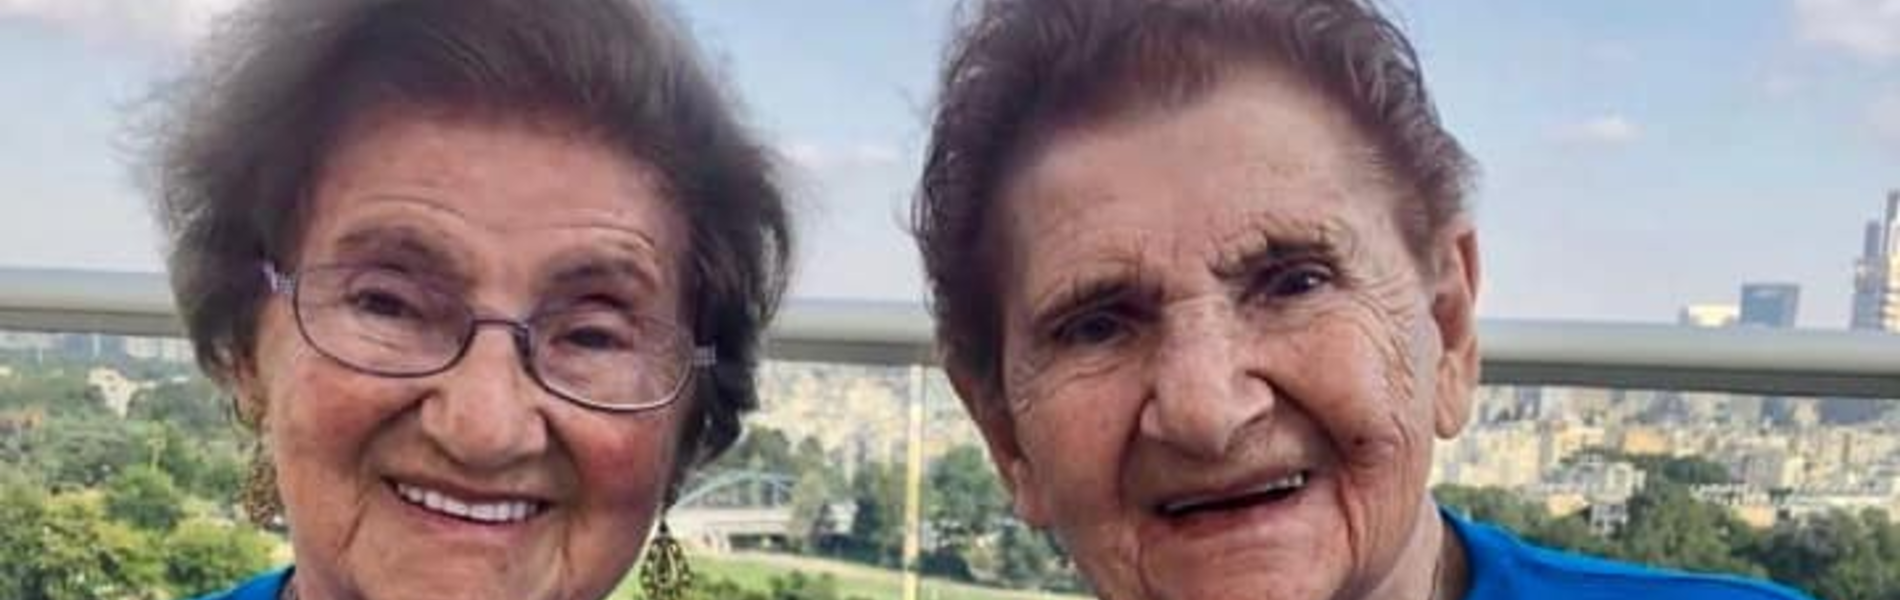 אסתר ויהודית: שרדו יחד את השואה וכעת חוגגות יחד יום הולדת 95